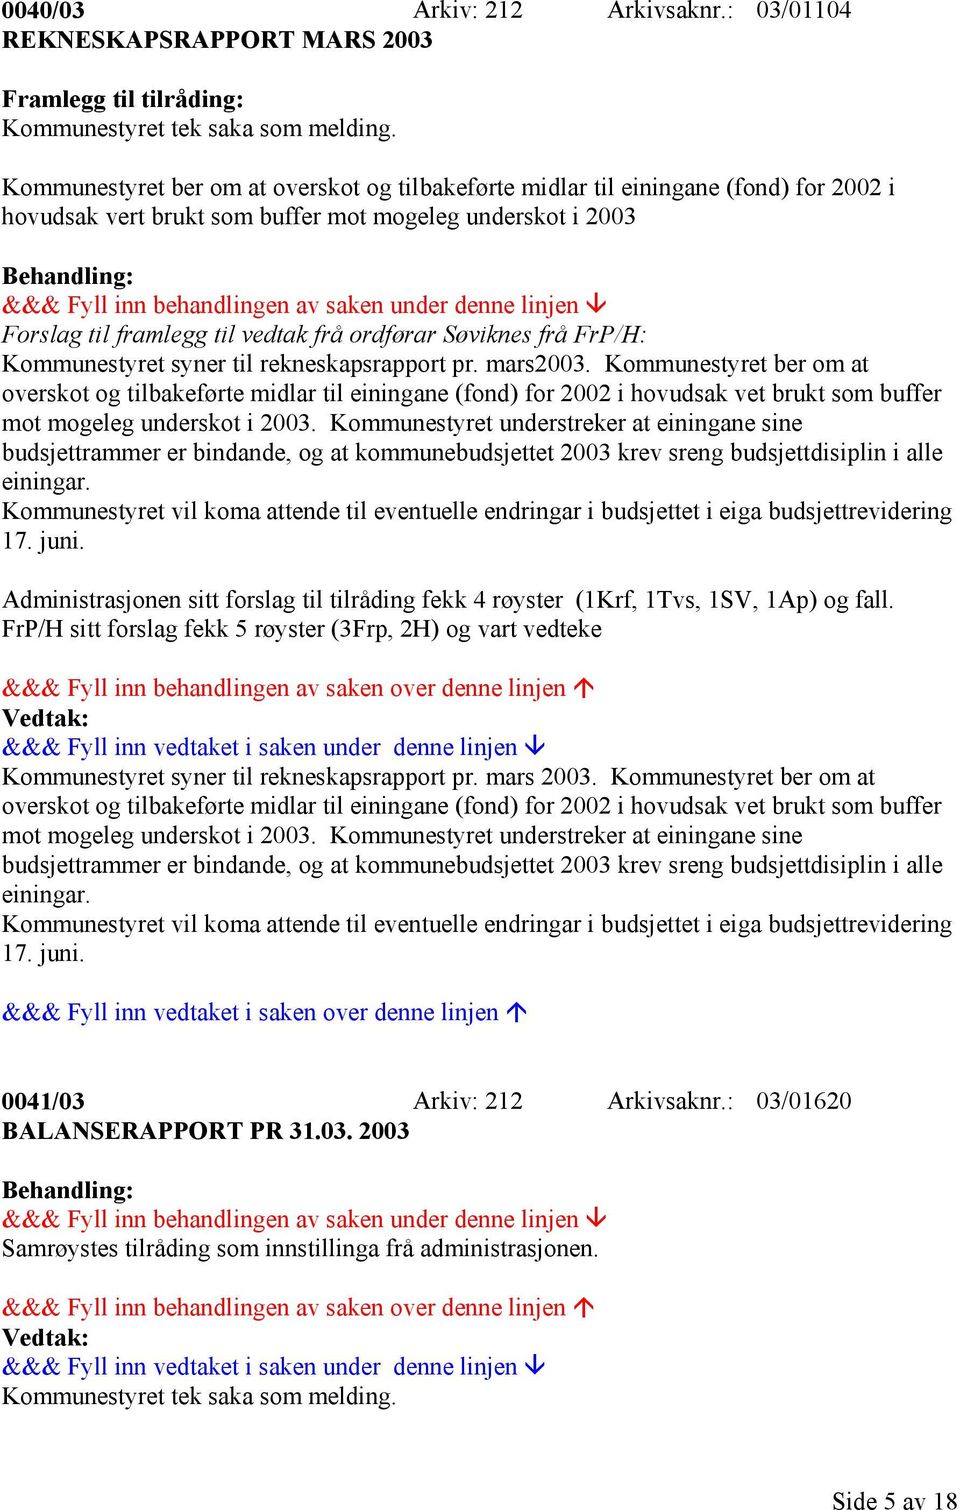 Søviknes frå FrP/H: Kommunestyret syner til rekneskapsrapport pr. mars2003.